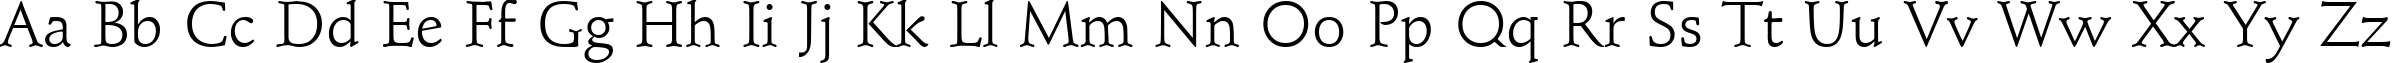 Пример написания английского алфавита шрифтом Schindler